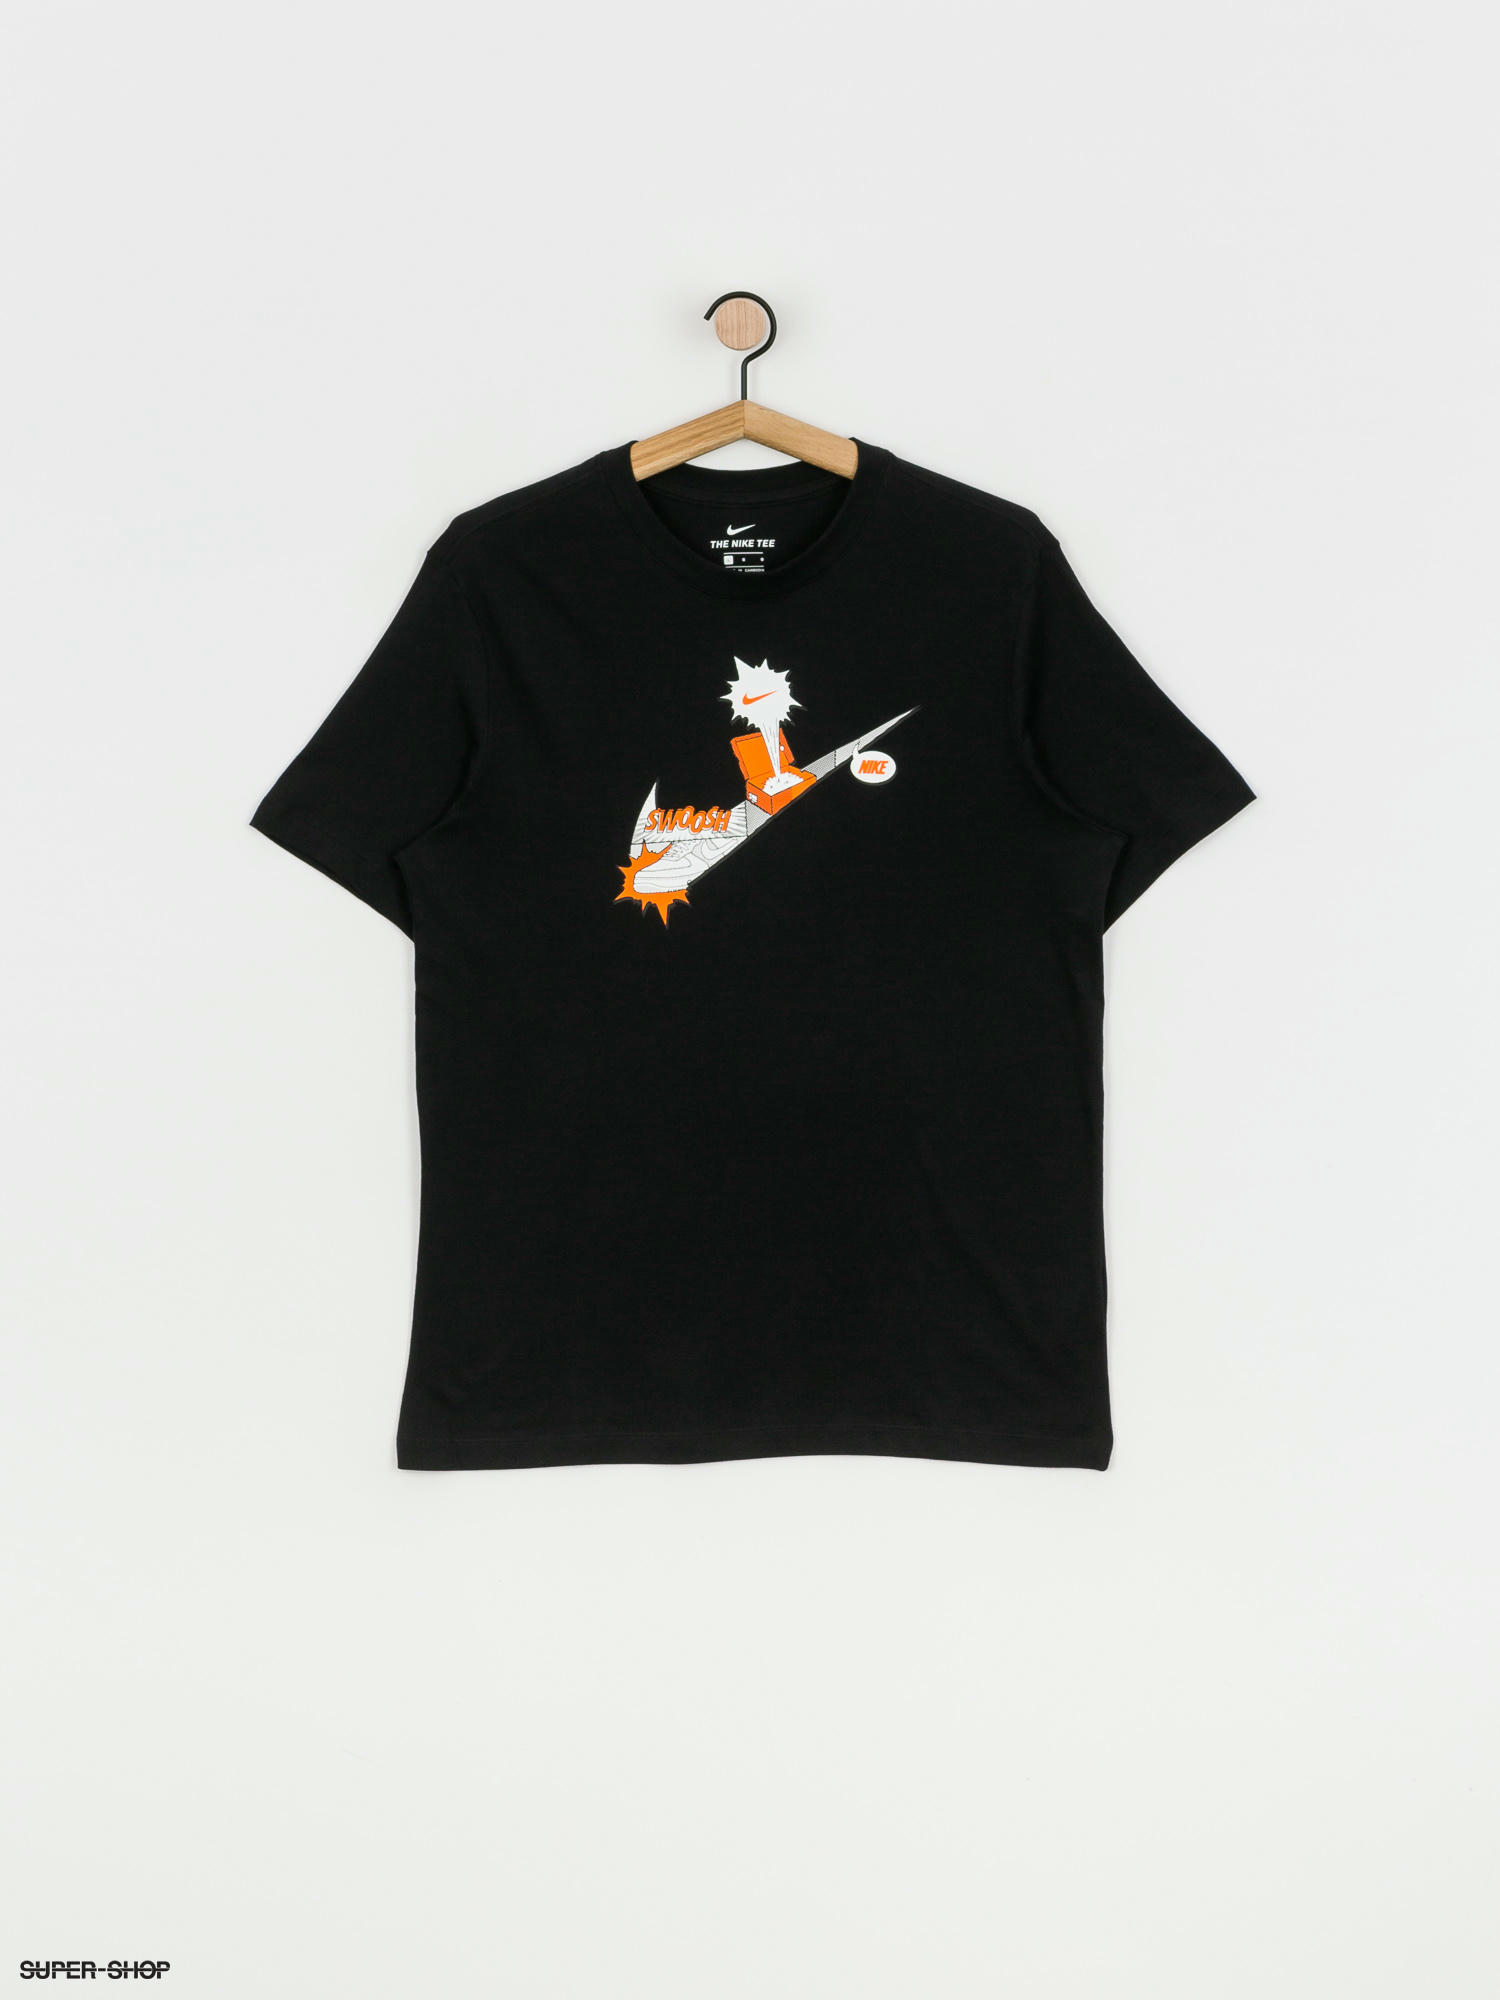 Nike Sportswear Sneakerhead T-shirt (black)